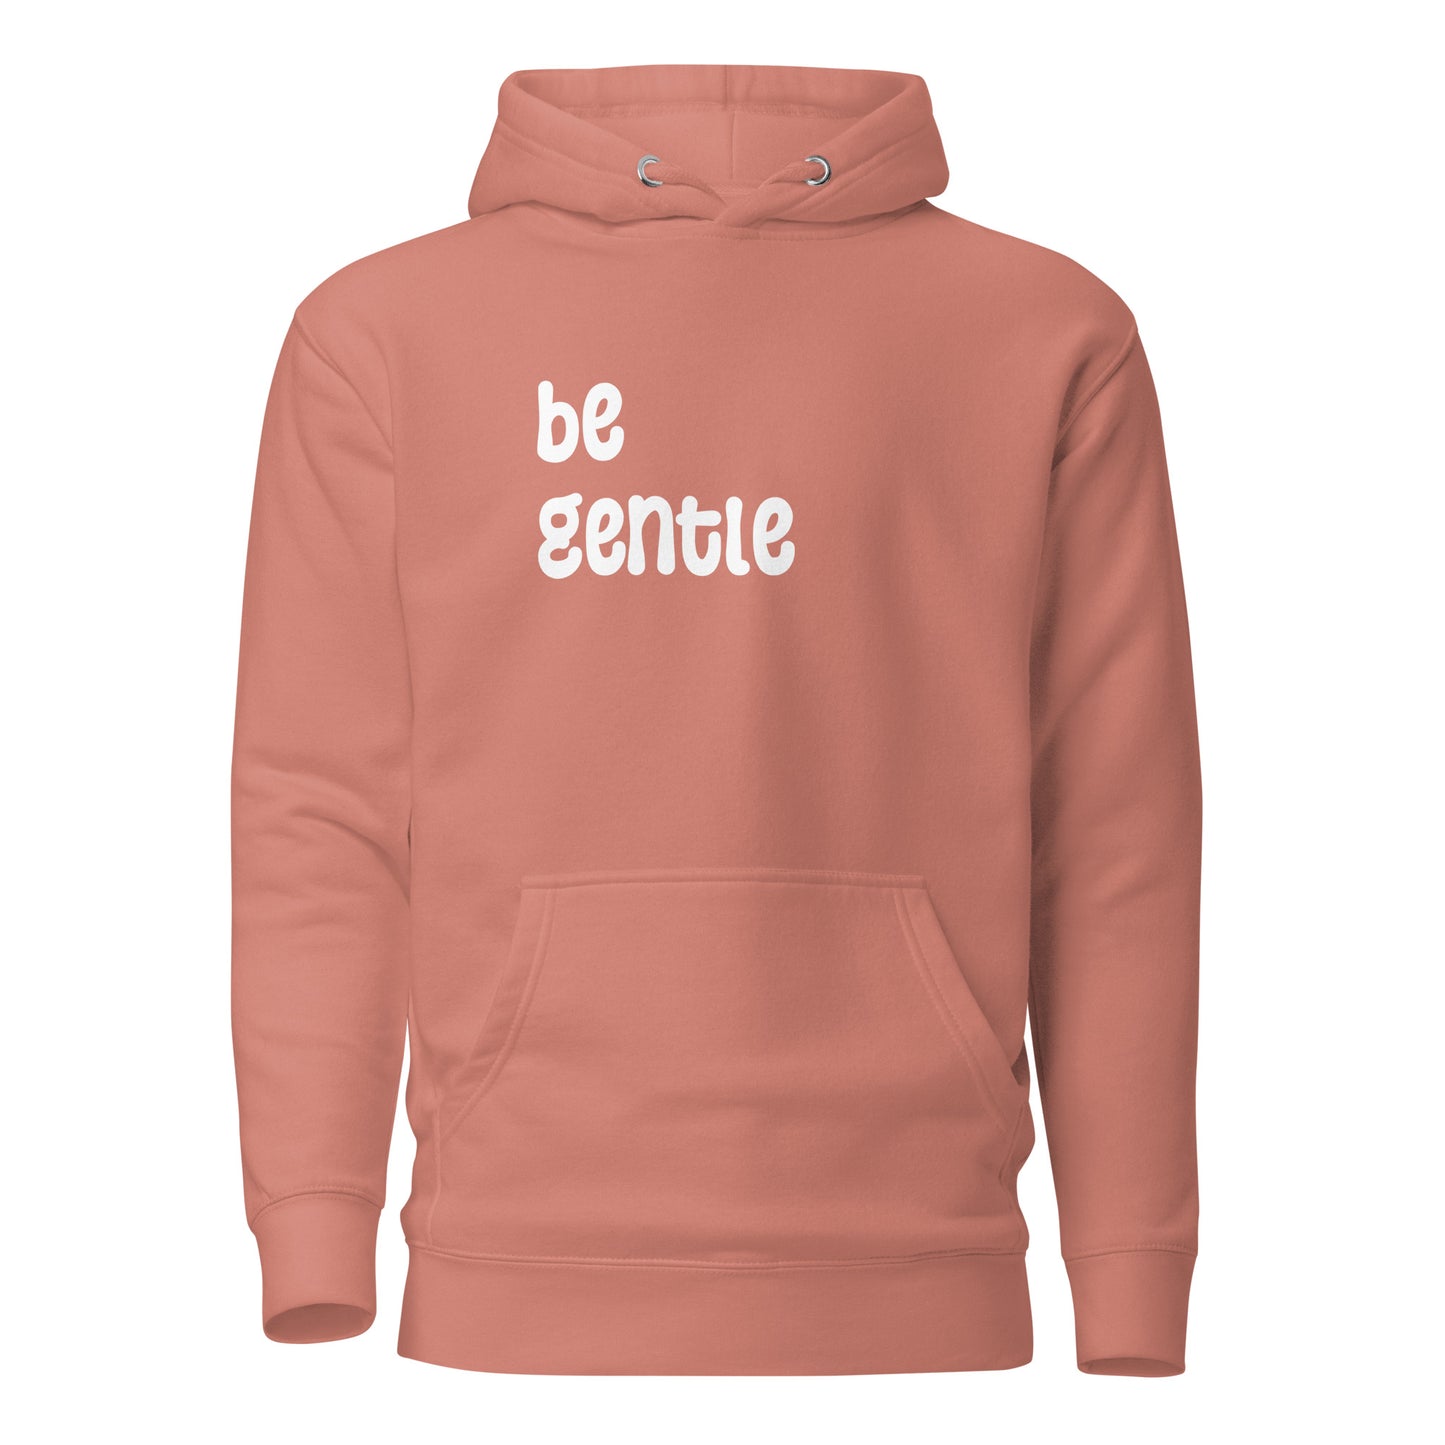 "be gentle" Hoodie